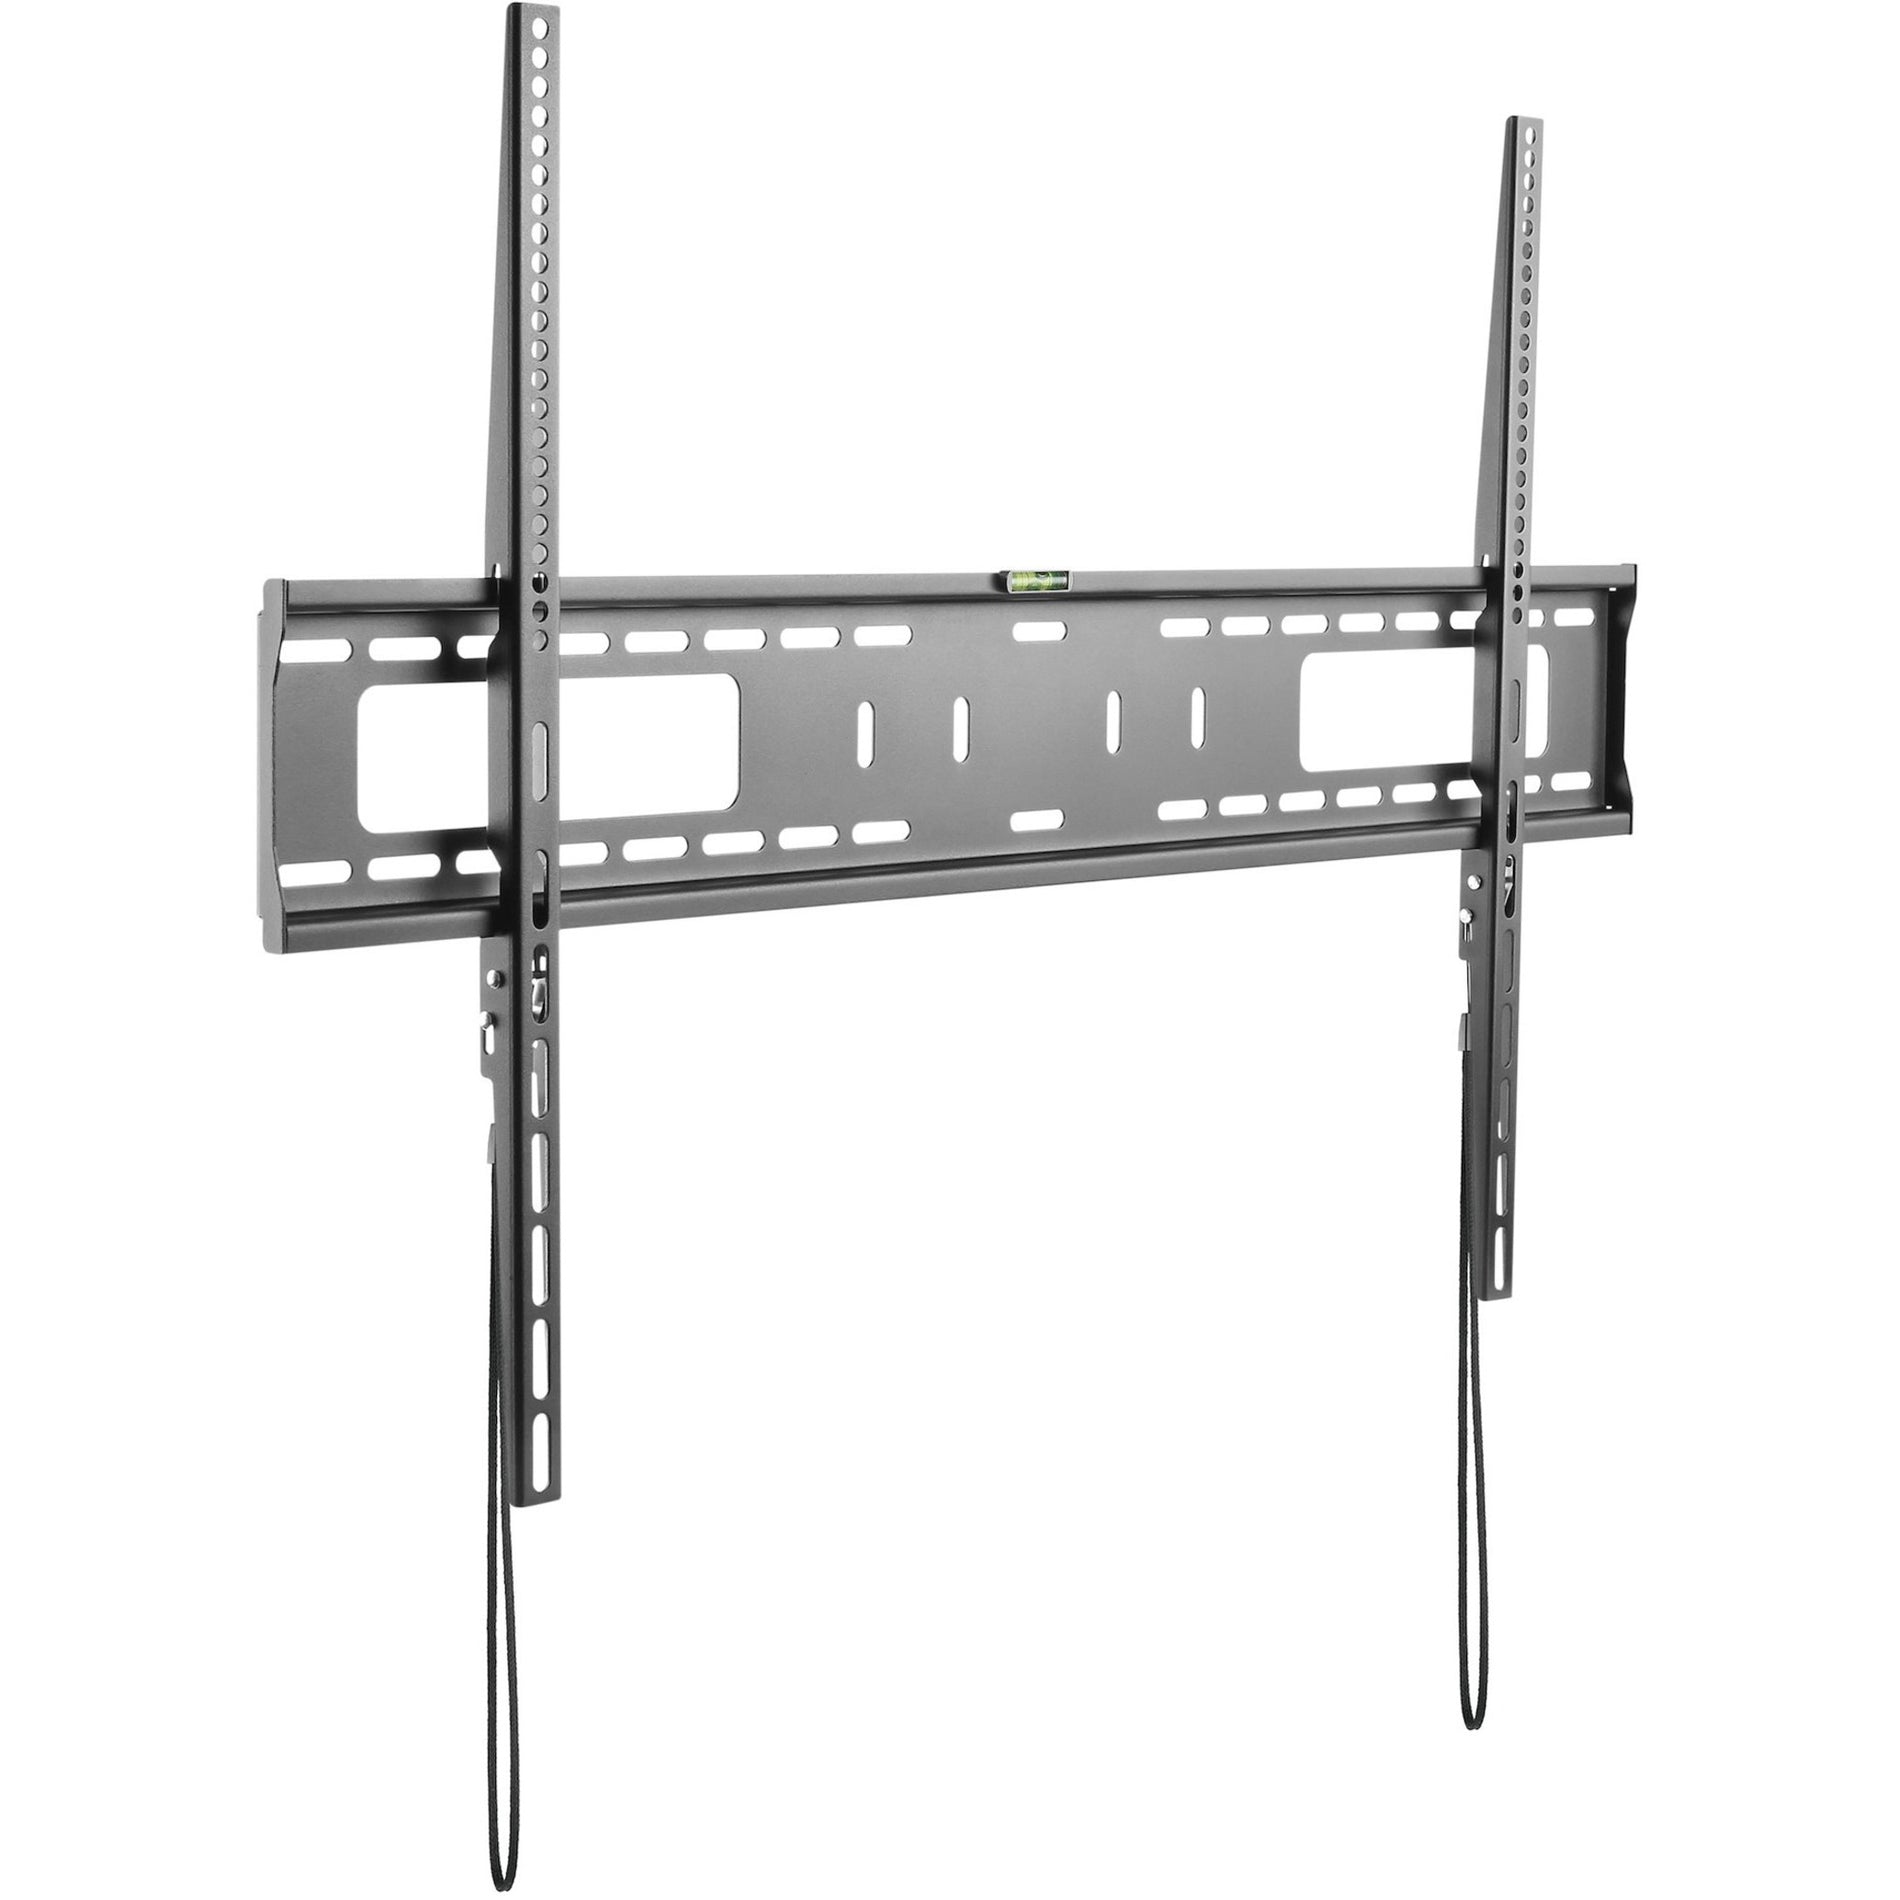 スタートレック.コム FPWFXB1 ヘビーデューティー商業用テレビ壁掛けブラケット - 固定式、ロープロファイル設計、60"から100" VESA マウントテレビに適合